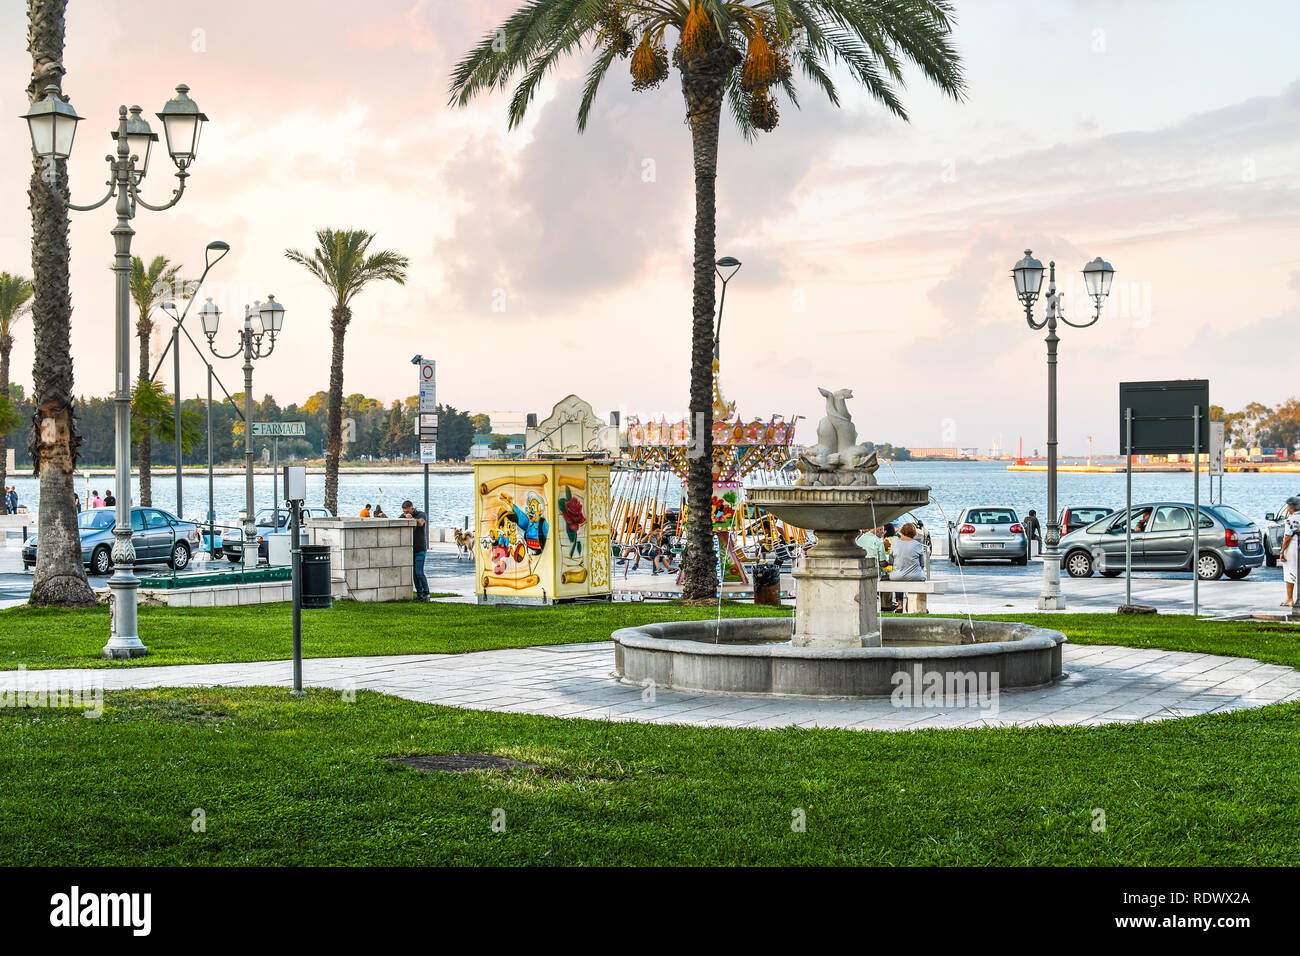 Mattina in un piccolo parco divertimenti presso la Piazza Vittorio Emanuele II lungo la costa del Mare Adriatico a Brindisi, Italia Foto Stock